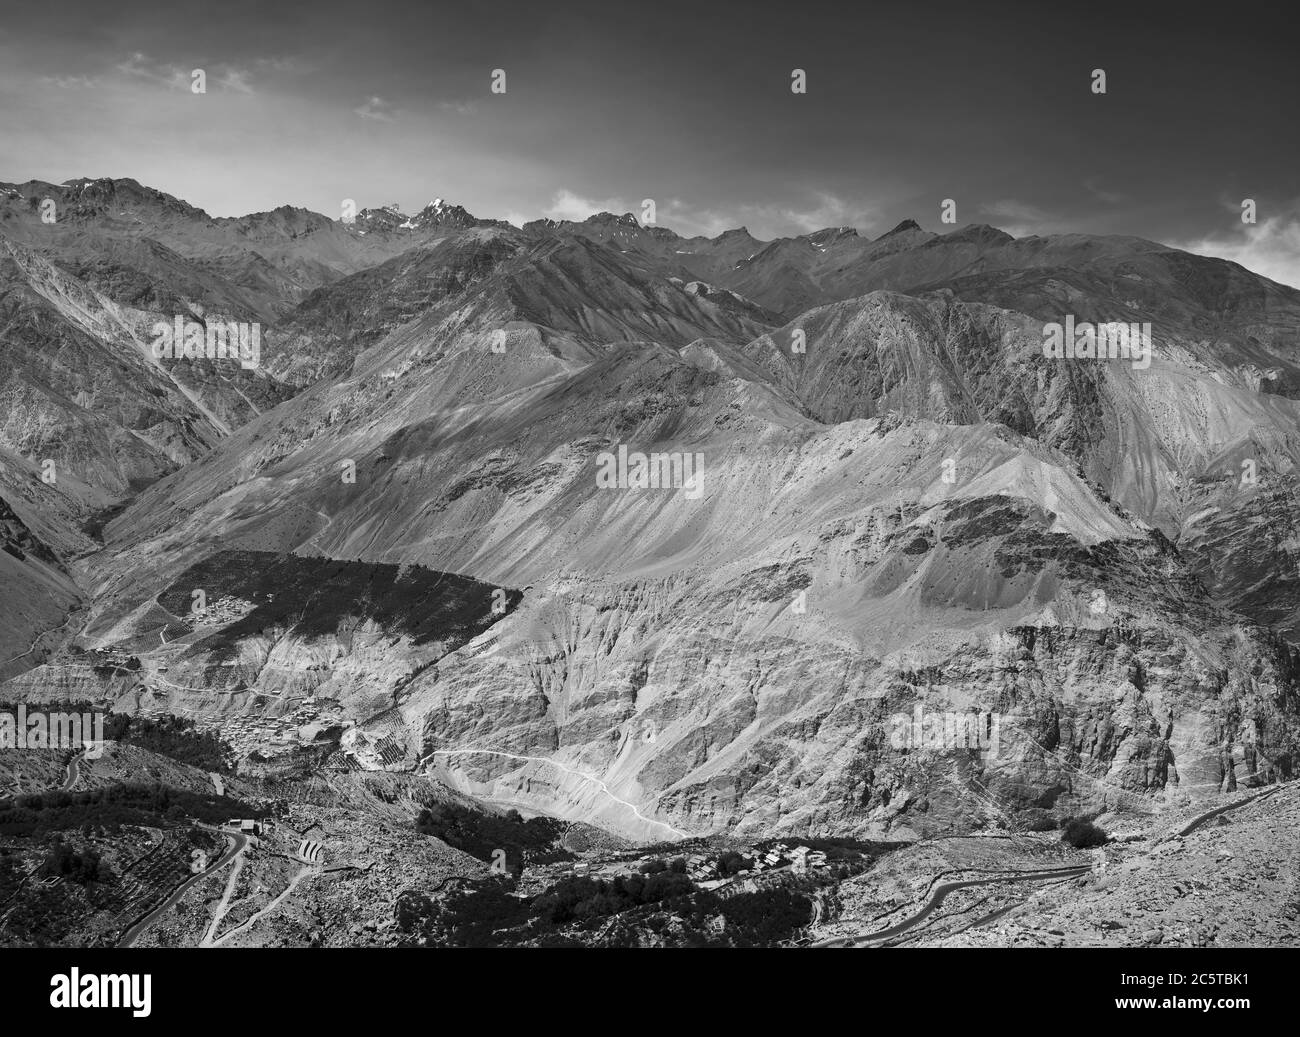 Vue surélevée de l'Himalaya et de la vallée de la rivière, y compris la route sinueuse en été près de Nako, Himachal Pradesh, Inde. Banque D'Images